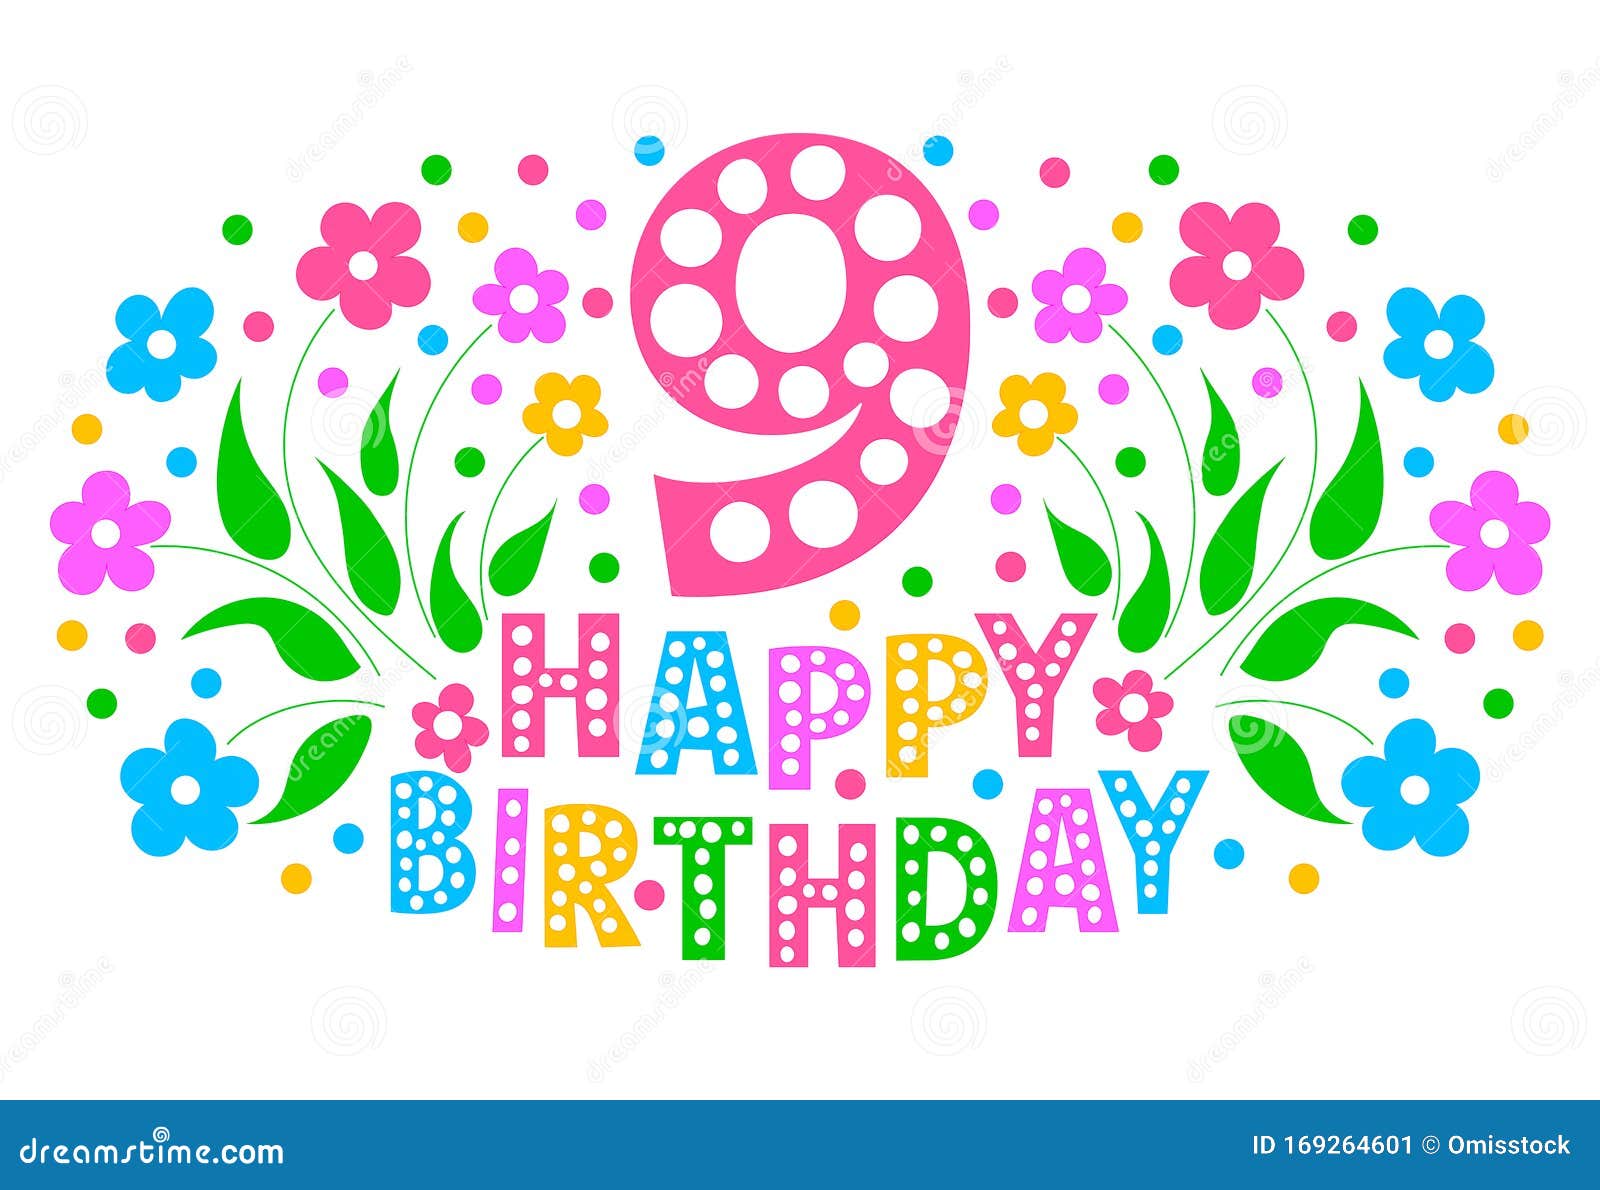 庆祝贺卡9周年小女孩生日贺卡彩色文字 花和纸屑向量例证 插画包括有愉快 生日 庆祝 活动